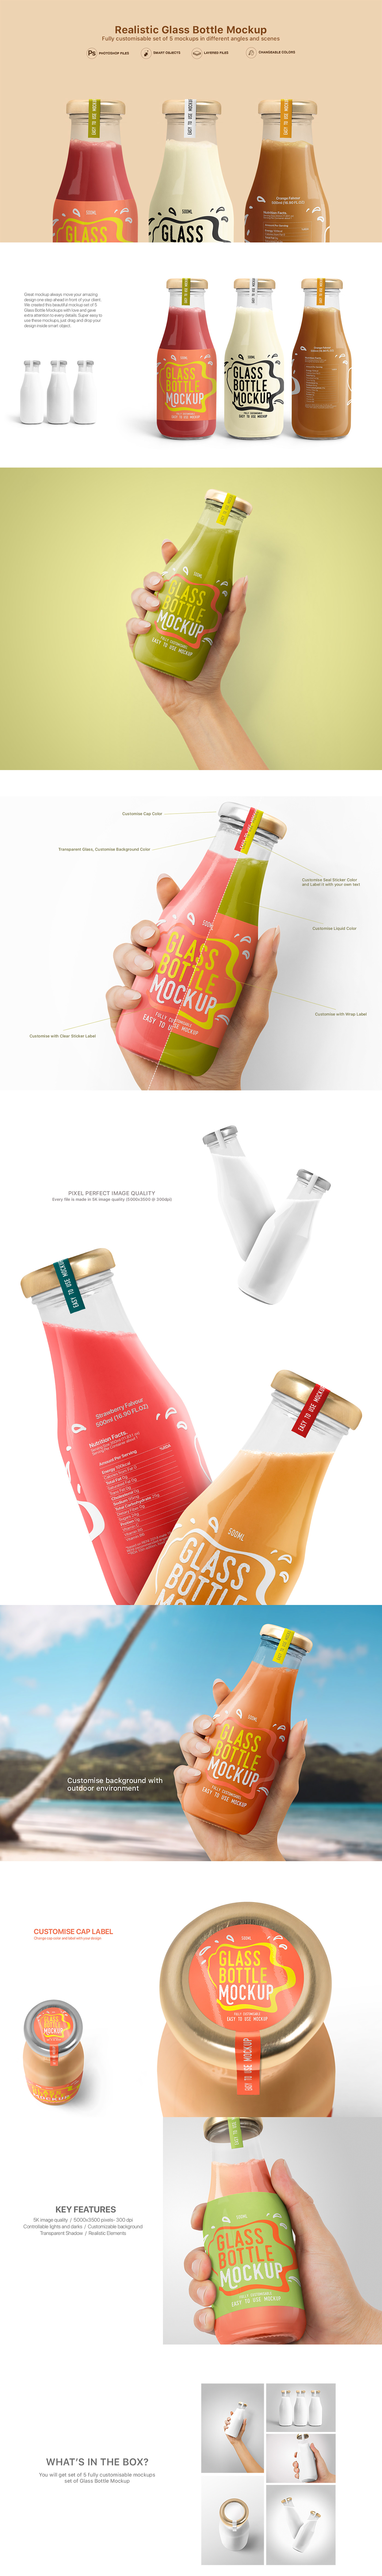 bottle glass juice Label milk Mockup Packaging shake smoothie transparent